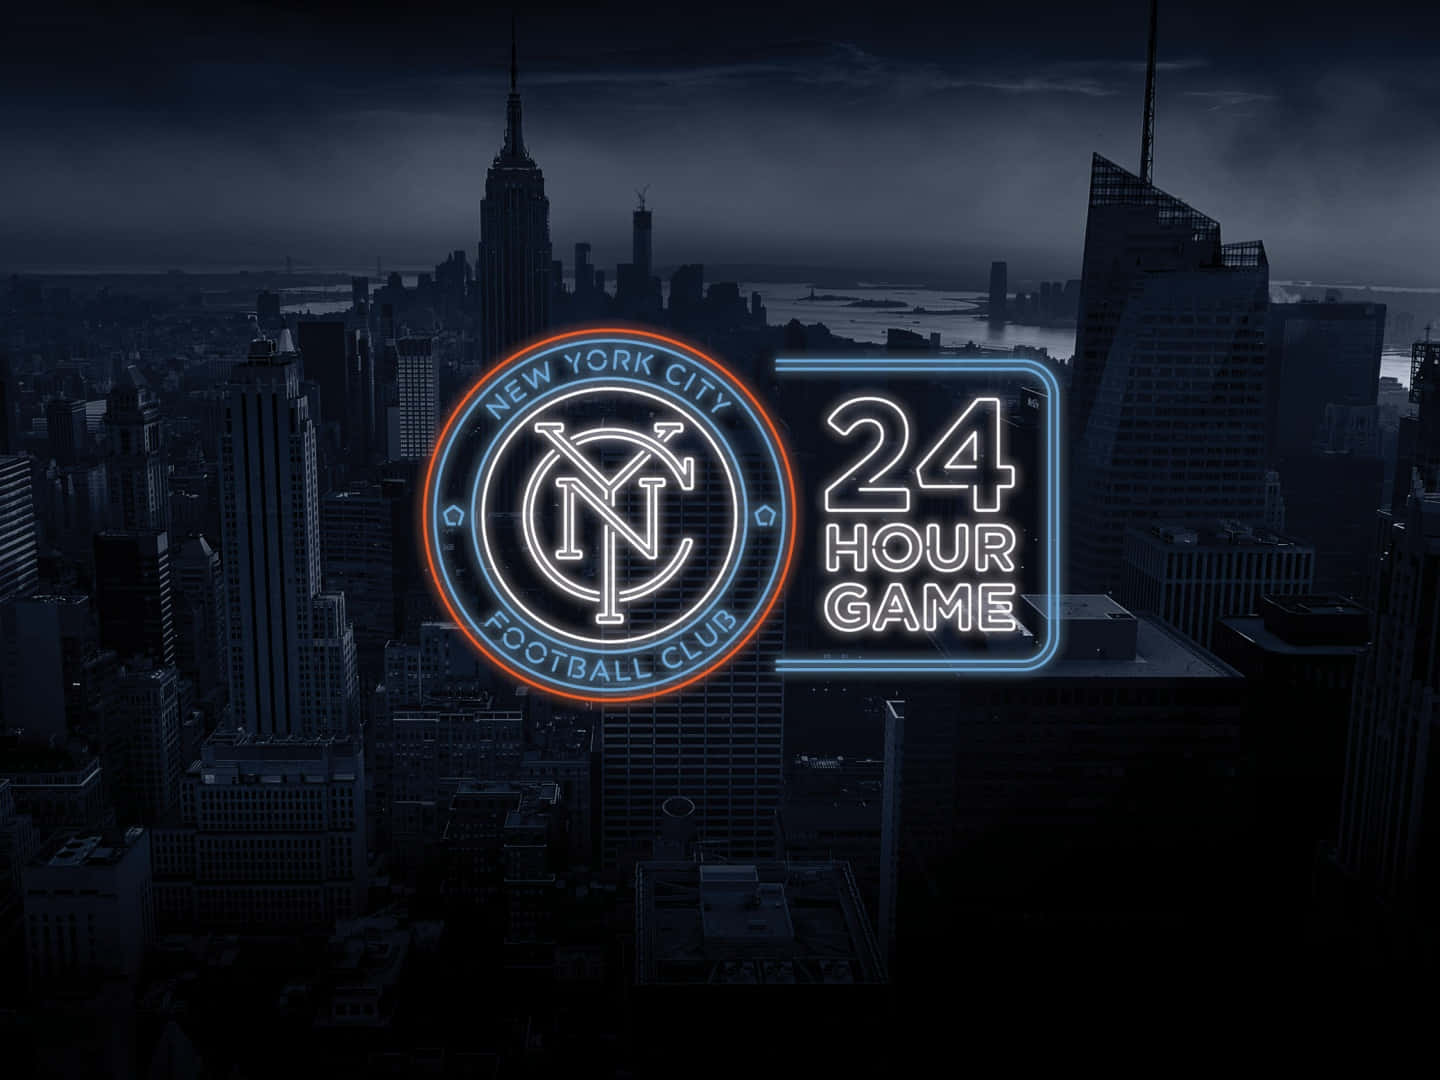 Logotipodel New York City Fc En Estética De Luz De Neón. Fondo de pantalla